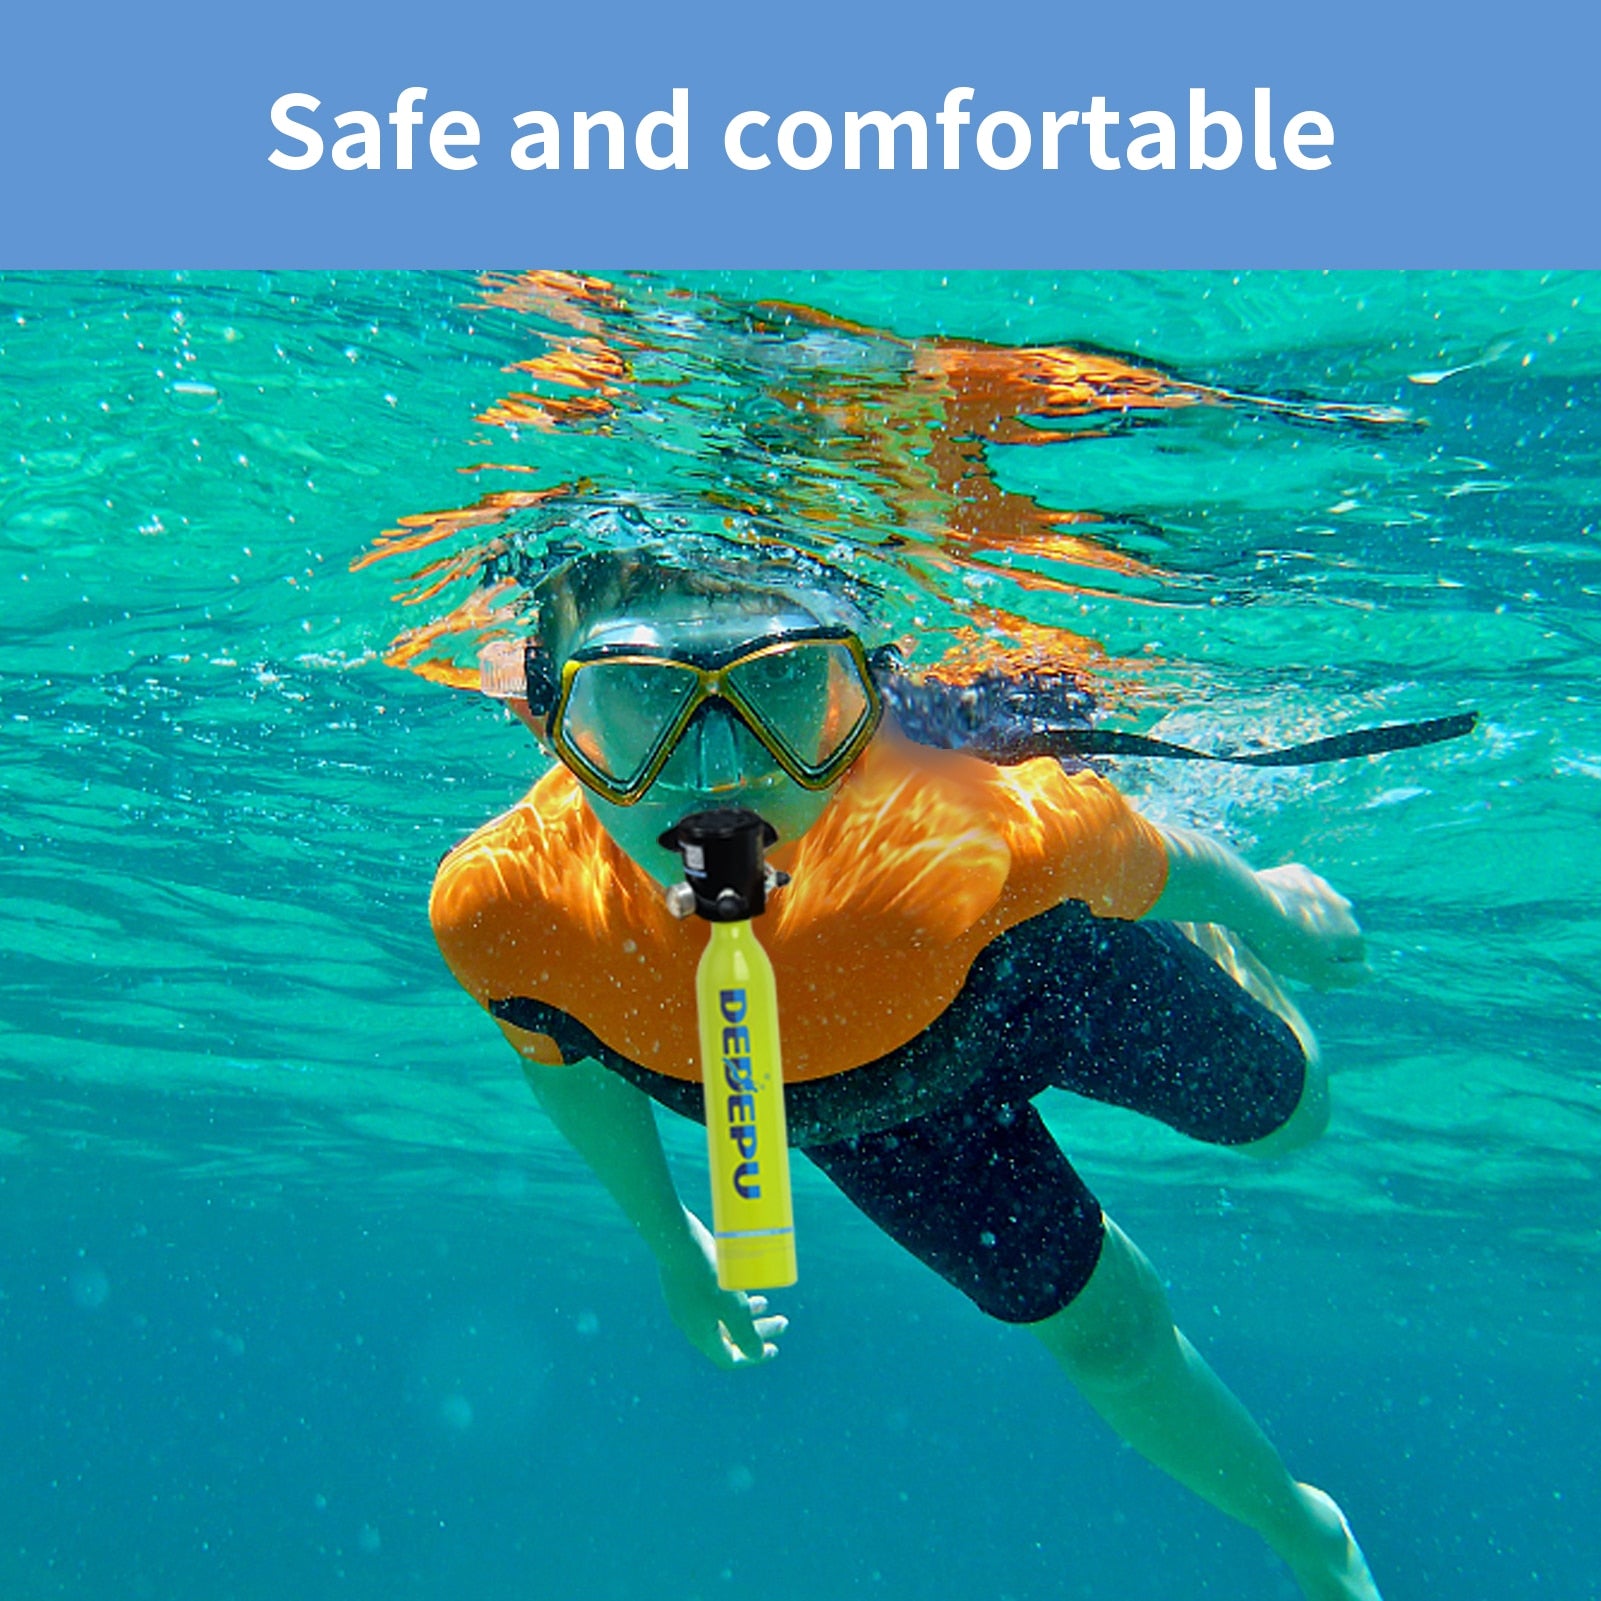 DEDEPU خزان للغوص تحت الماء معدات اسطوانة الغوص الصغيرة الغوص زجاجة الأكسجين مع مضخة يدوية نظارات الغوص الغوص